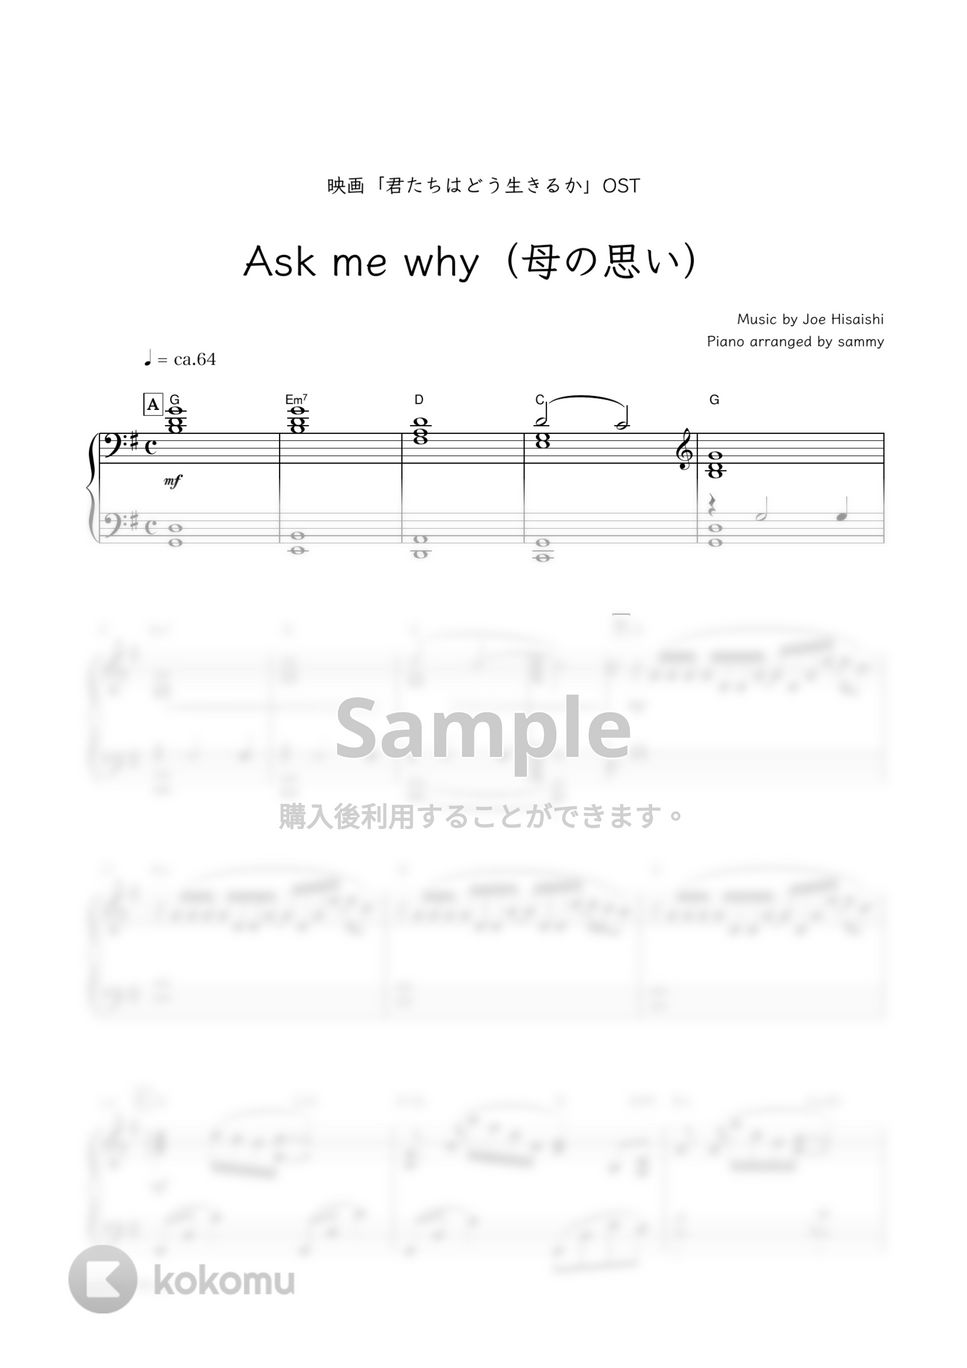 久石譲・映画『君たちはどう生きるか』OST - Ask me why（母の思い） by sammy